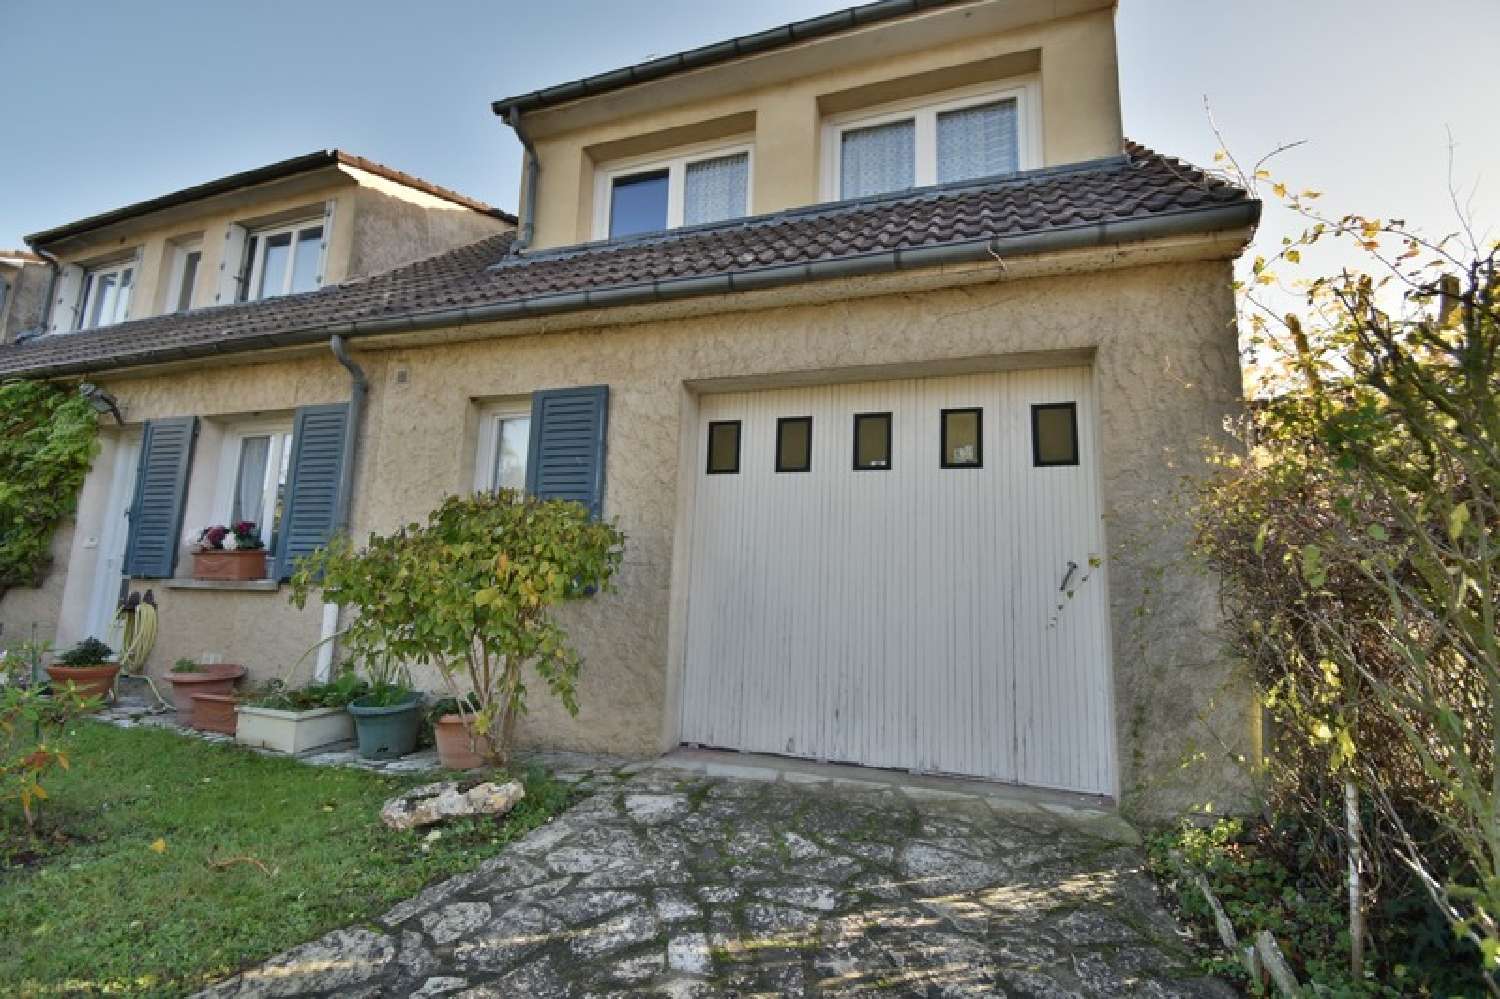  for sale house Chartres Eure-et-Loir 5